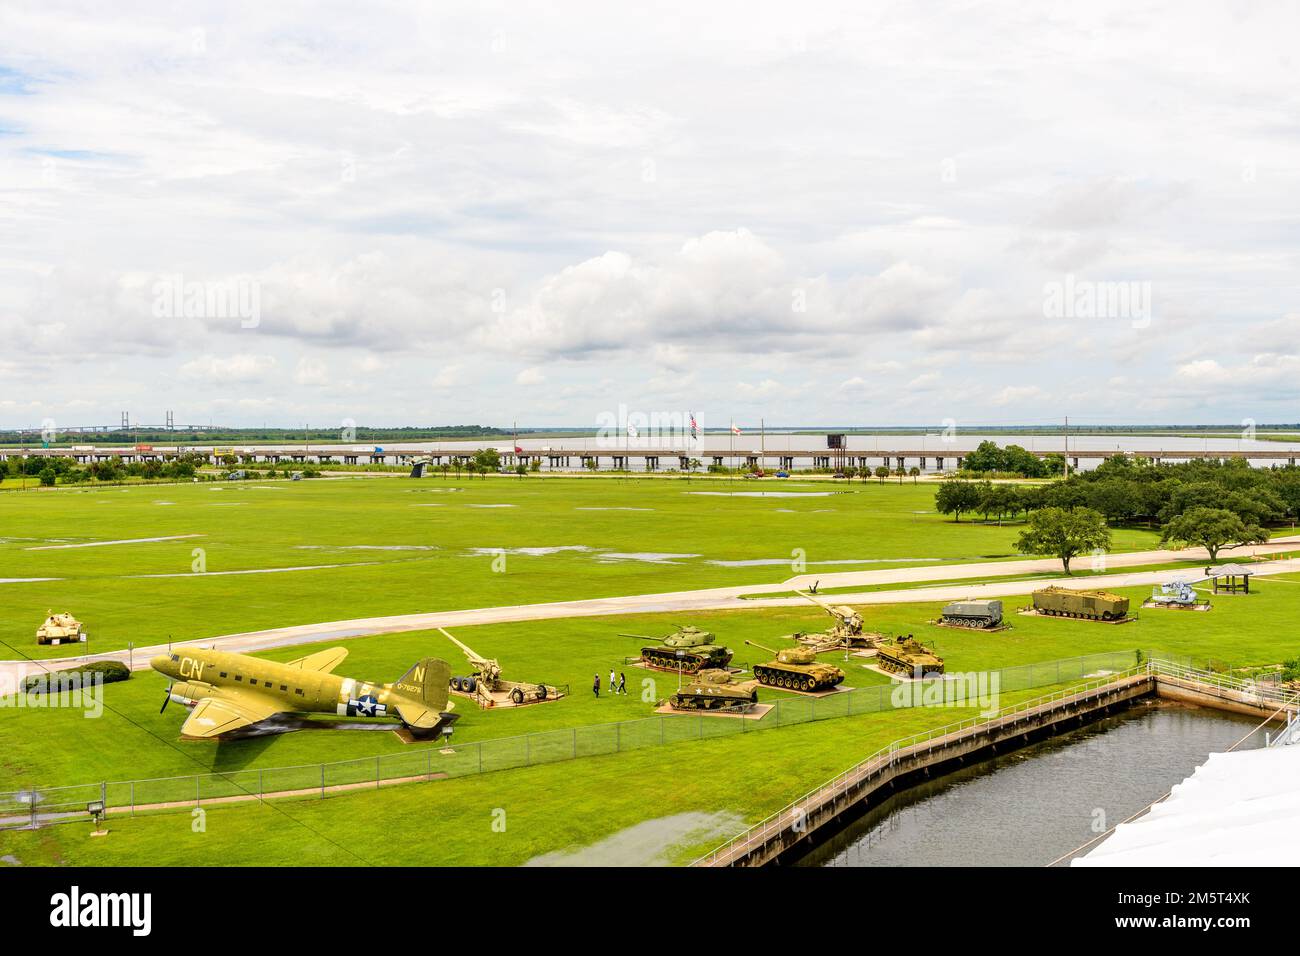 Aerei e carri armati sul terreno del Battleship Memorial Park a Mobile, Alabama USA Foto Stock